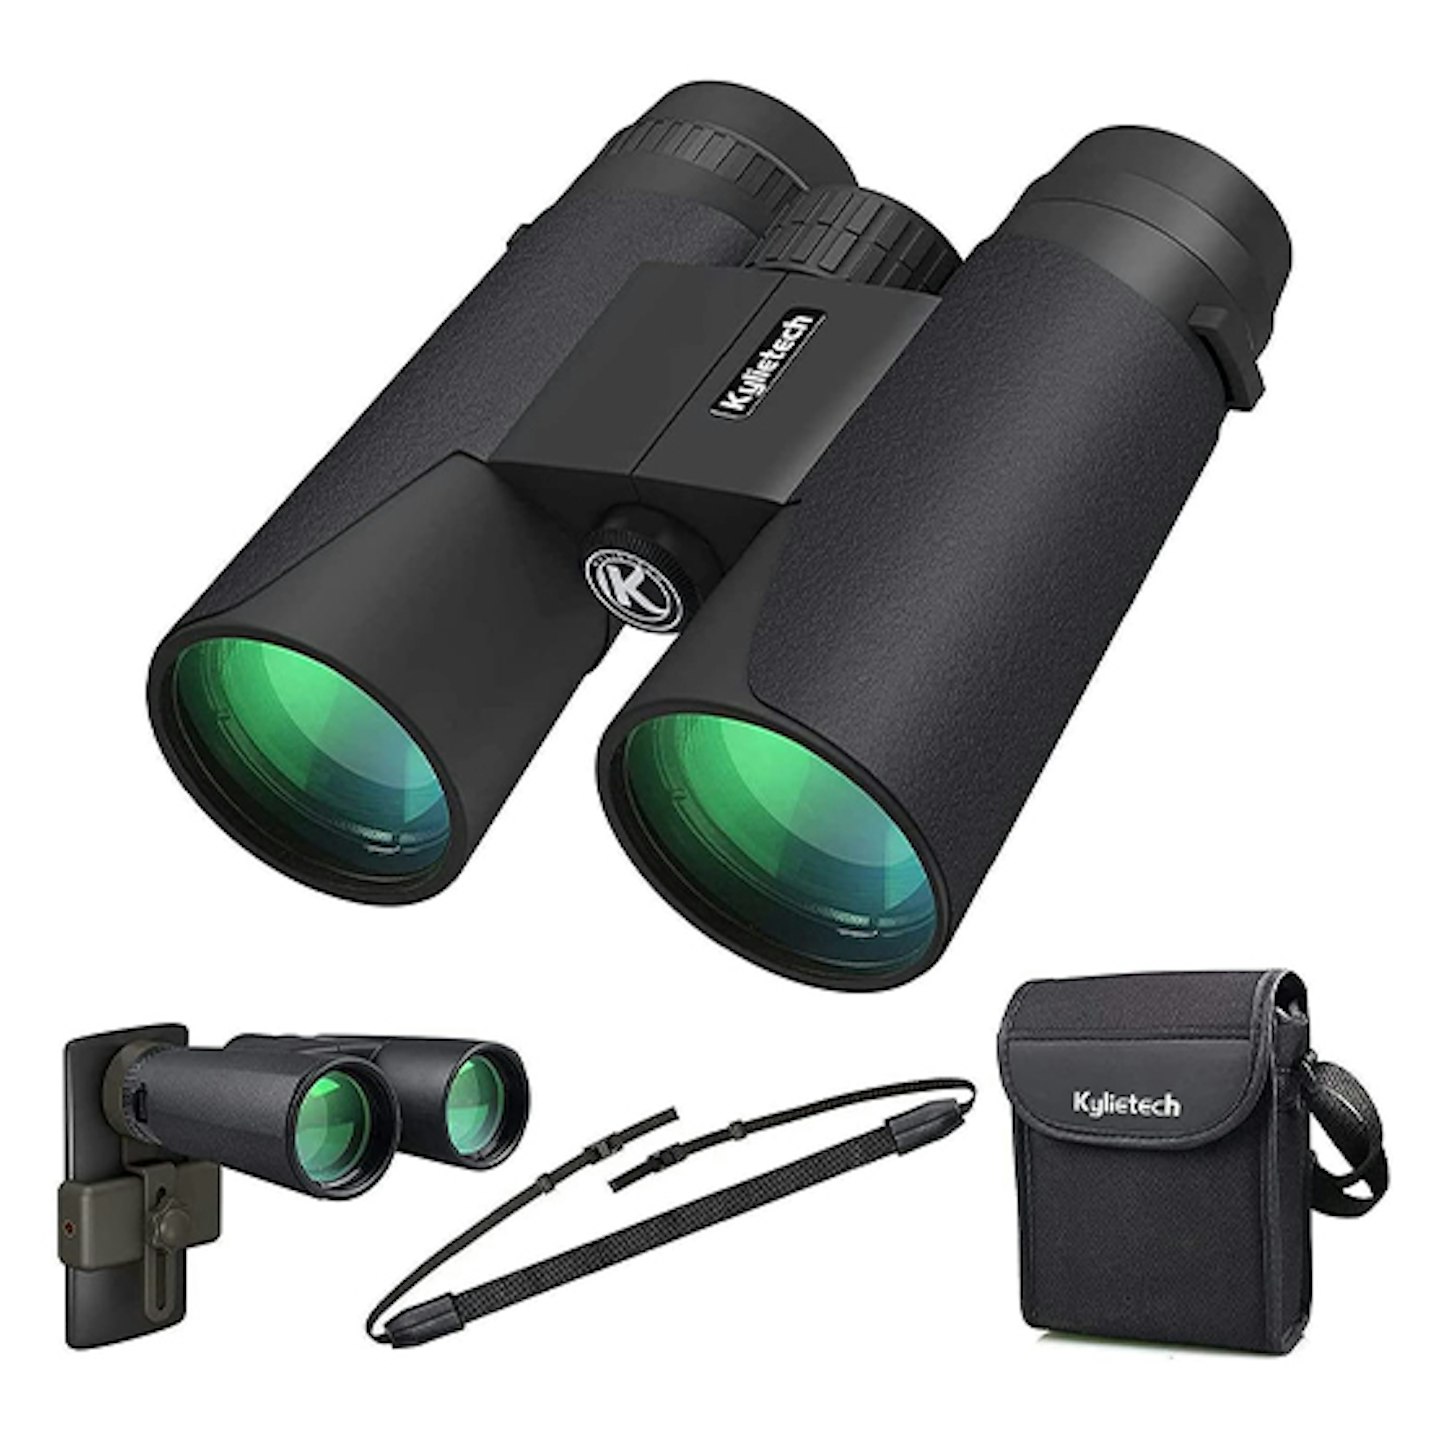 The best bird-watching gifts: Kylietech High Power Binoculars